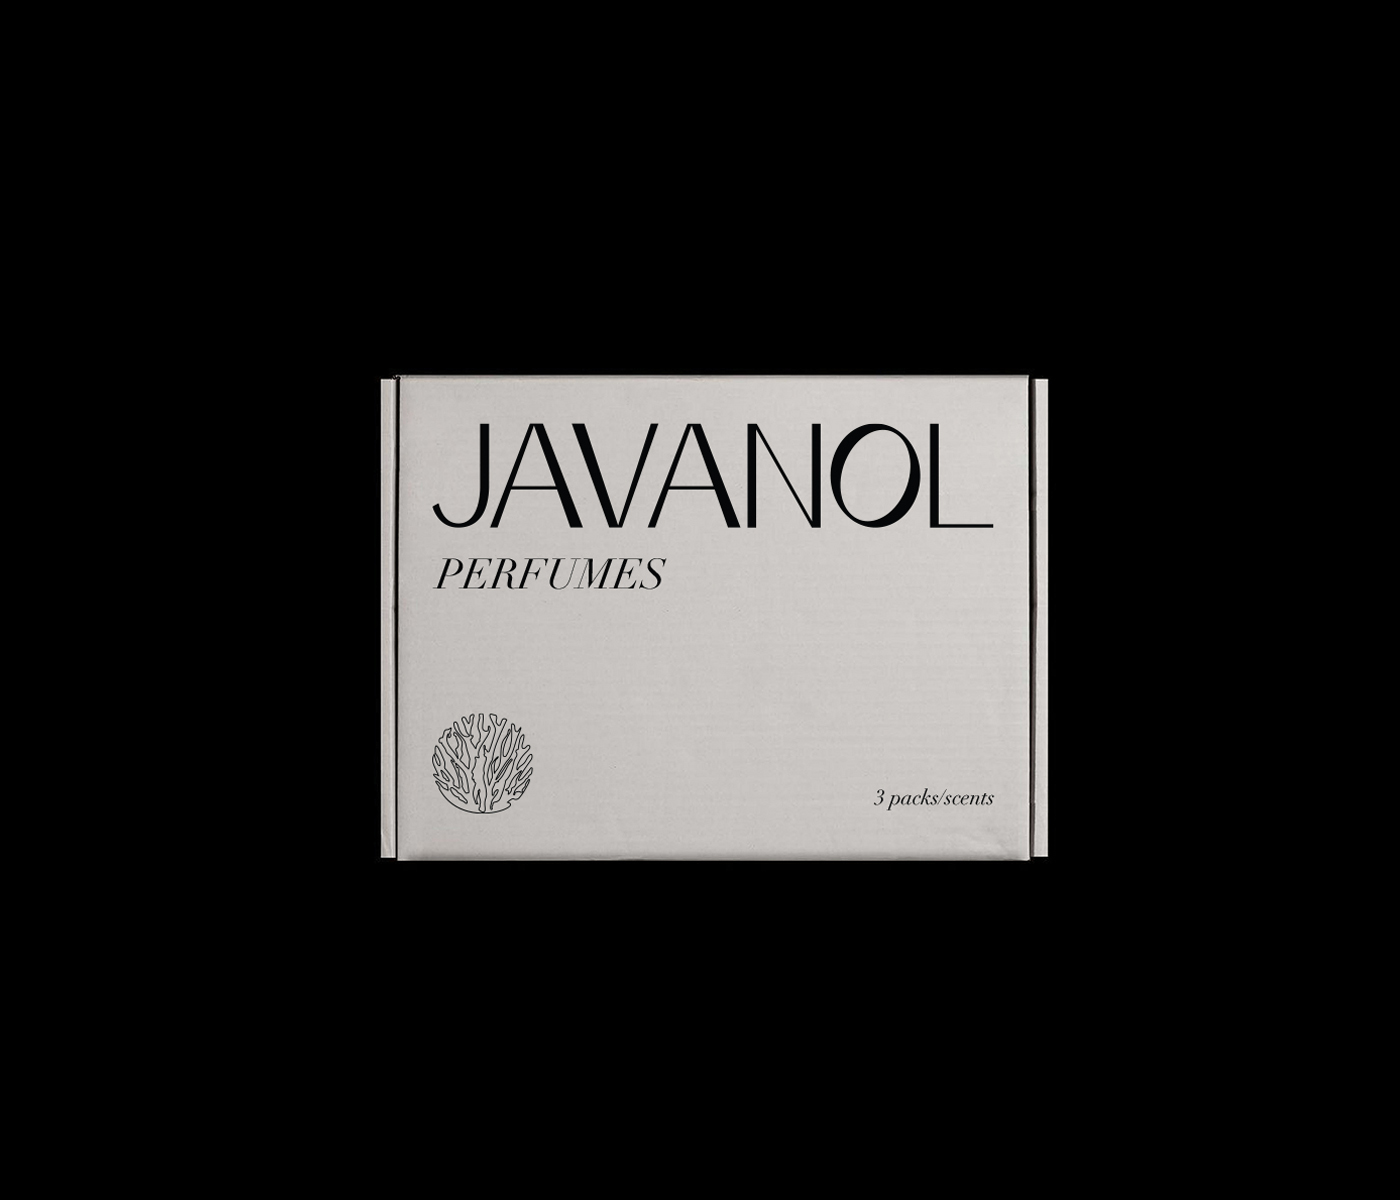 Javanol Perfumes Brand Identity and Packaging